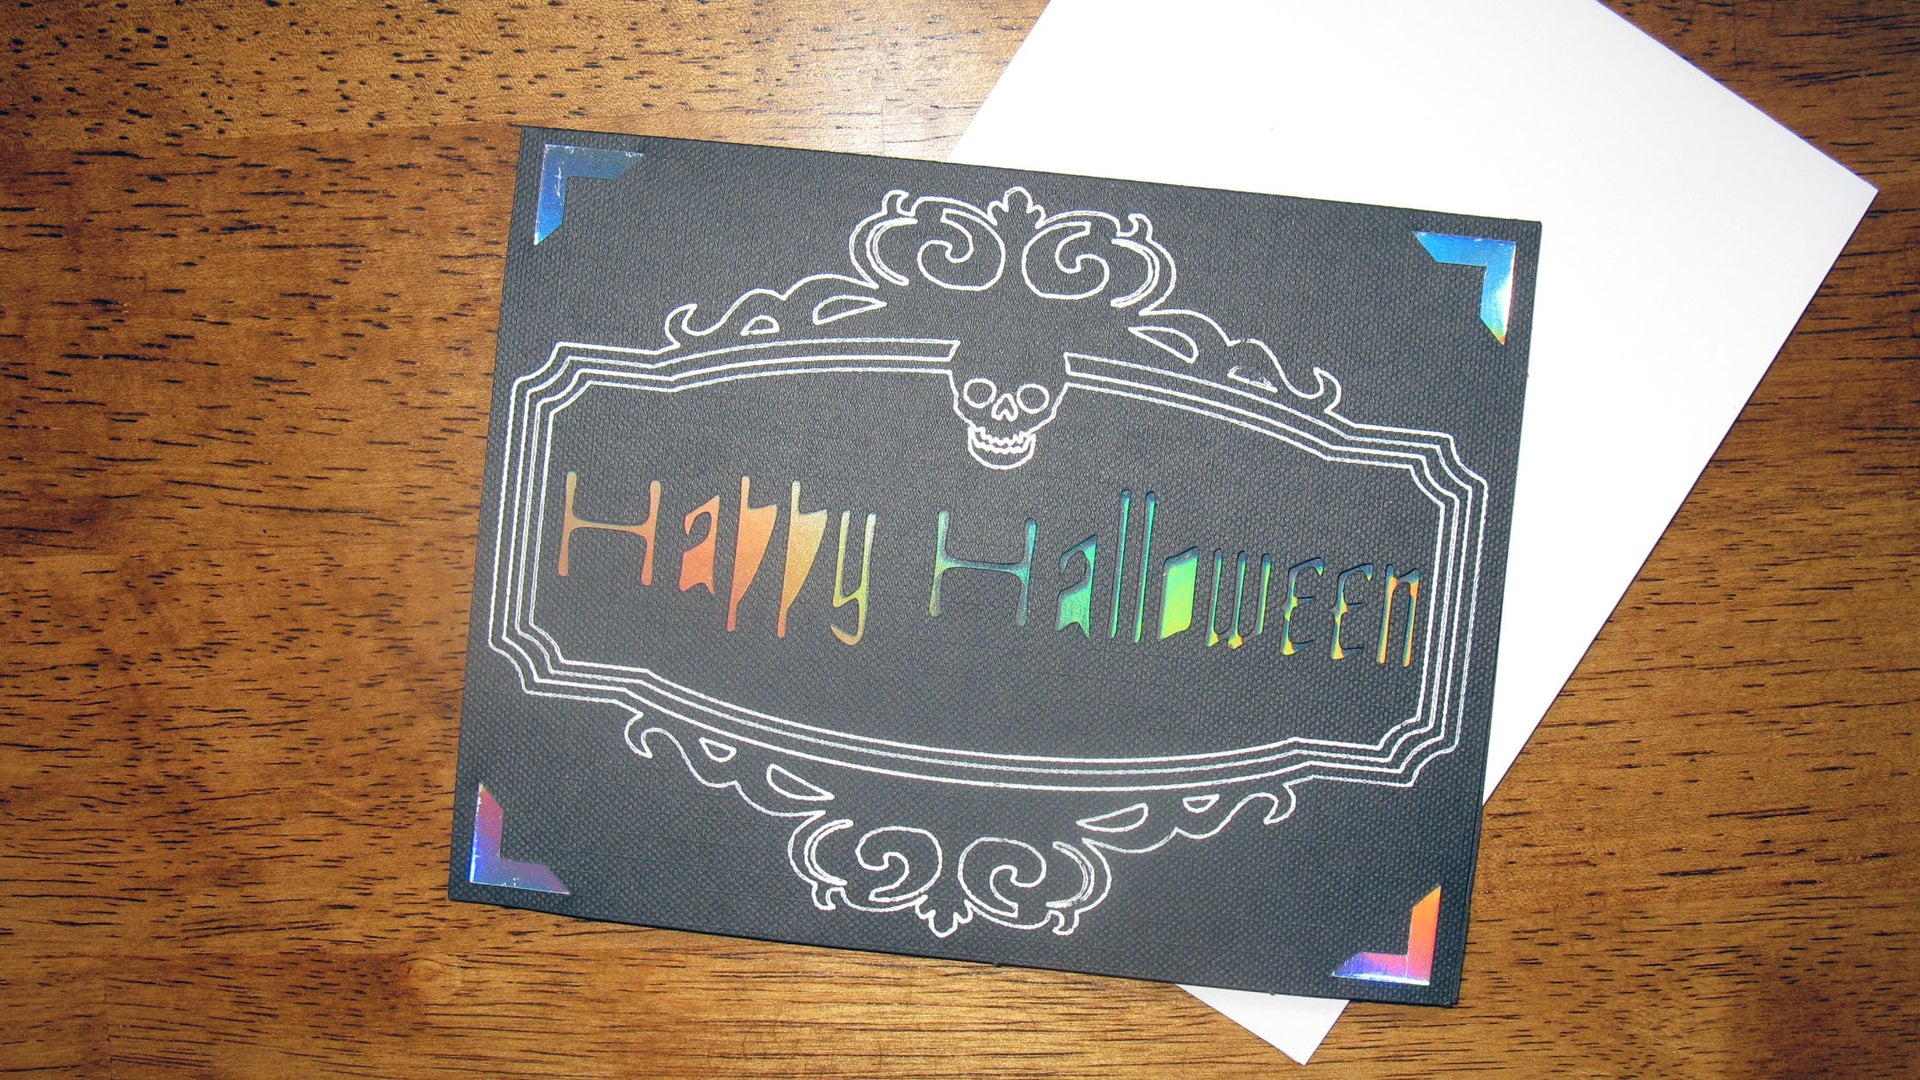 Halloween Insert Cards Using Cricut Opaque Pens